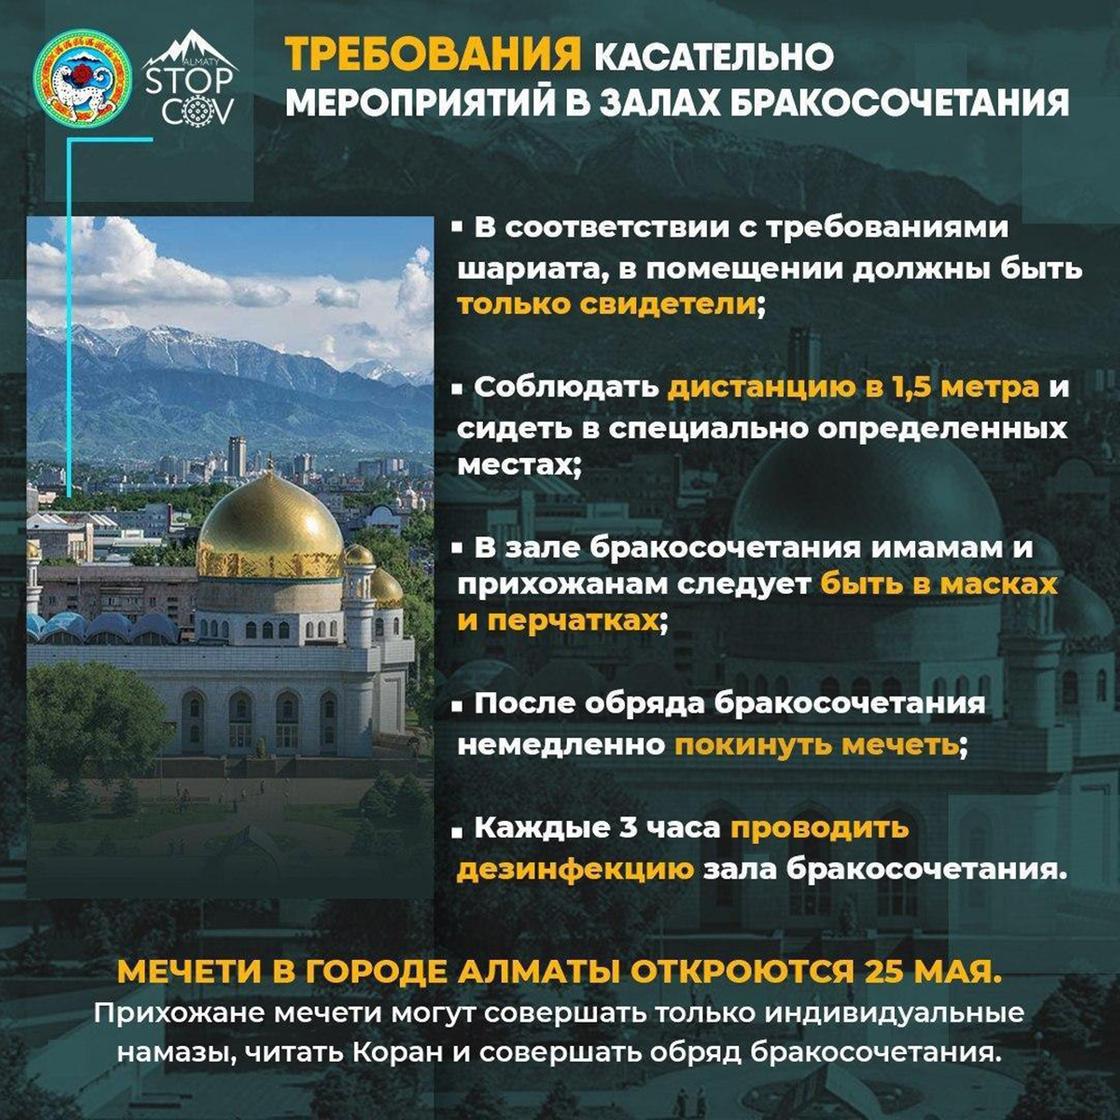 Опубликованы правила поведения в мечетях для казахстанцев